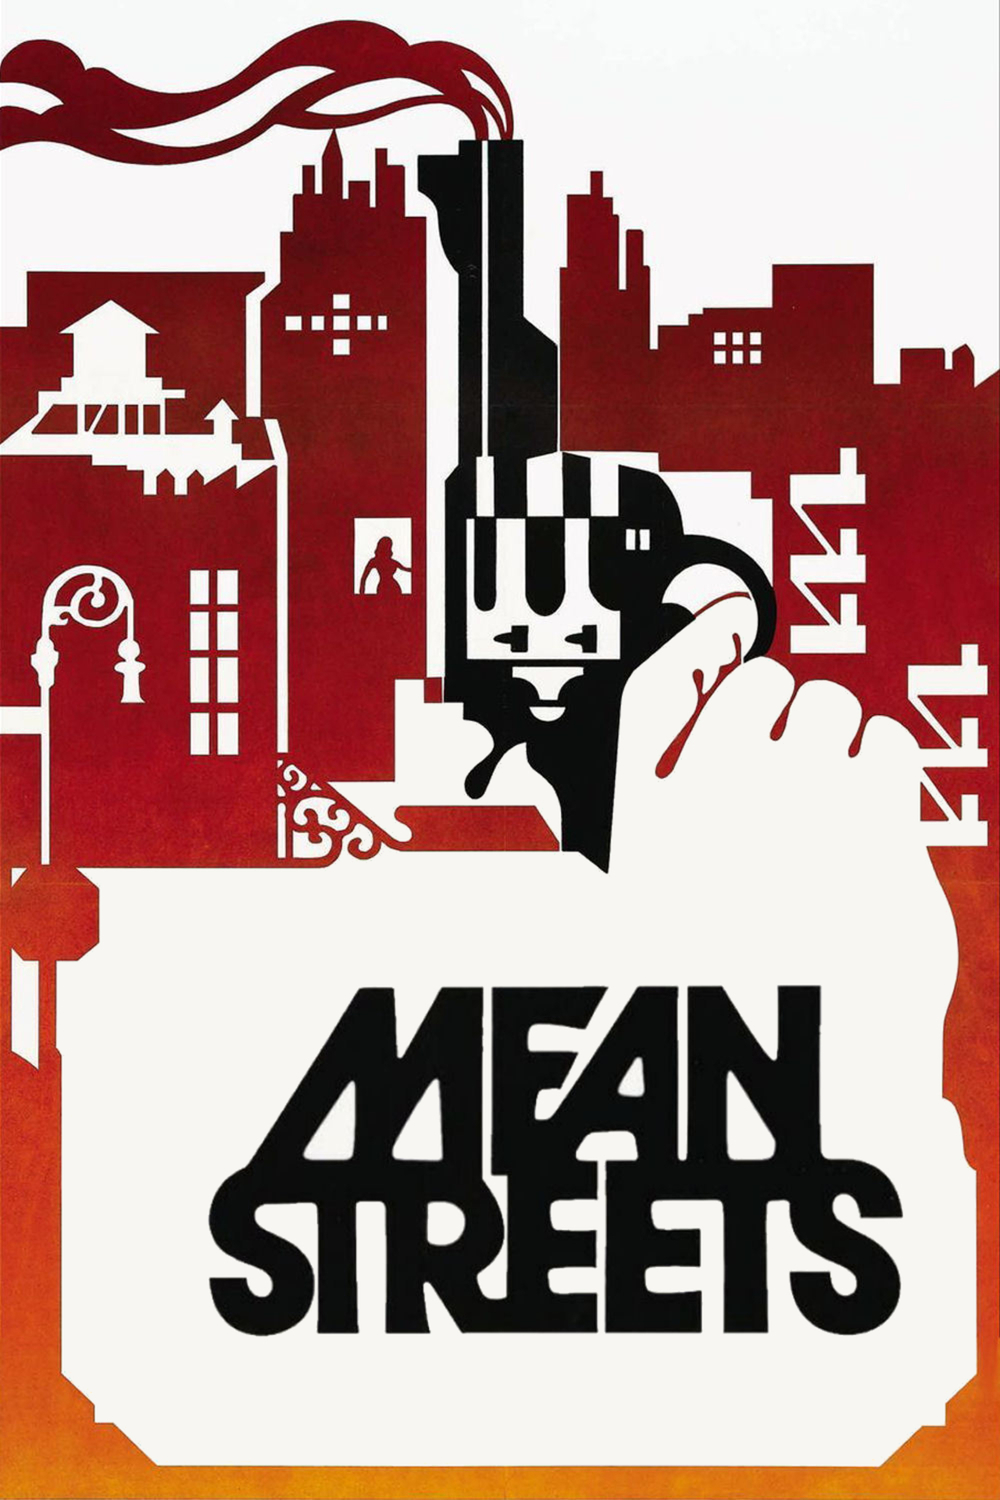 Špinavé ulice | Fandíme filmu